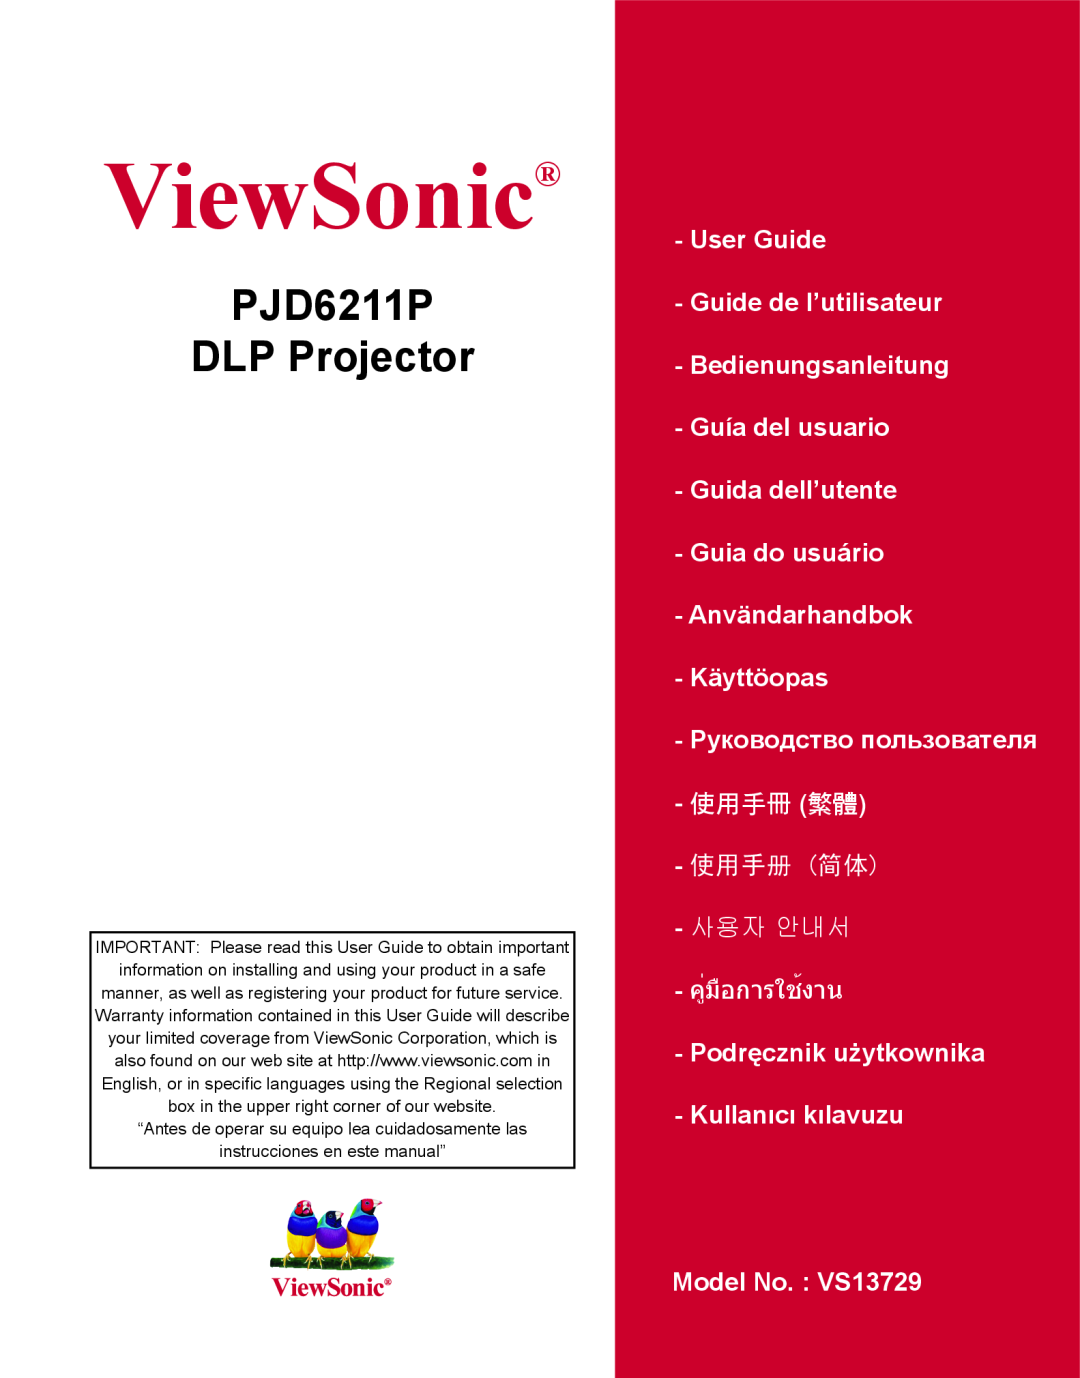 ViewSonic VS13729 warranty PJD6211P DLP Projector, ViewSonic, 使用手冊 繁體, 使用手册 简体, 사용자 안내서, คู่มือการใช้งาน 